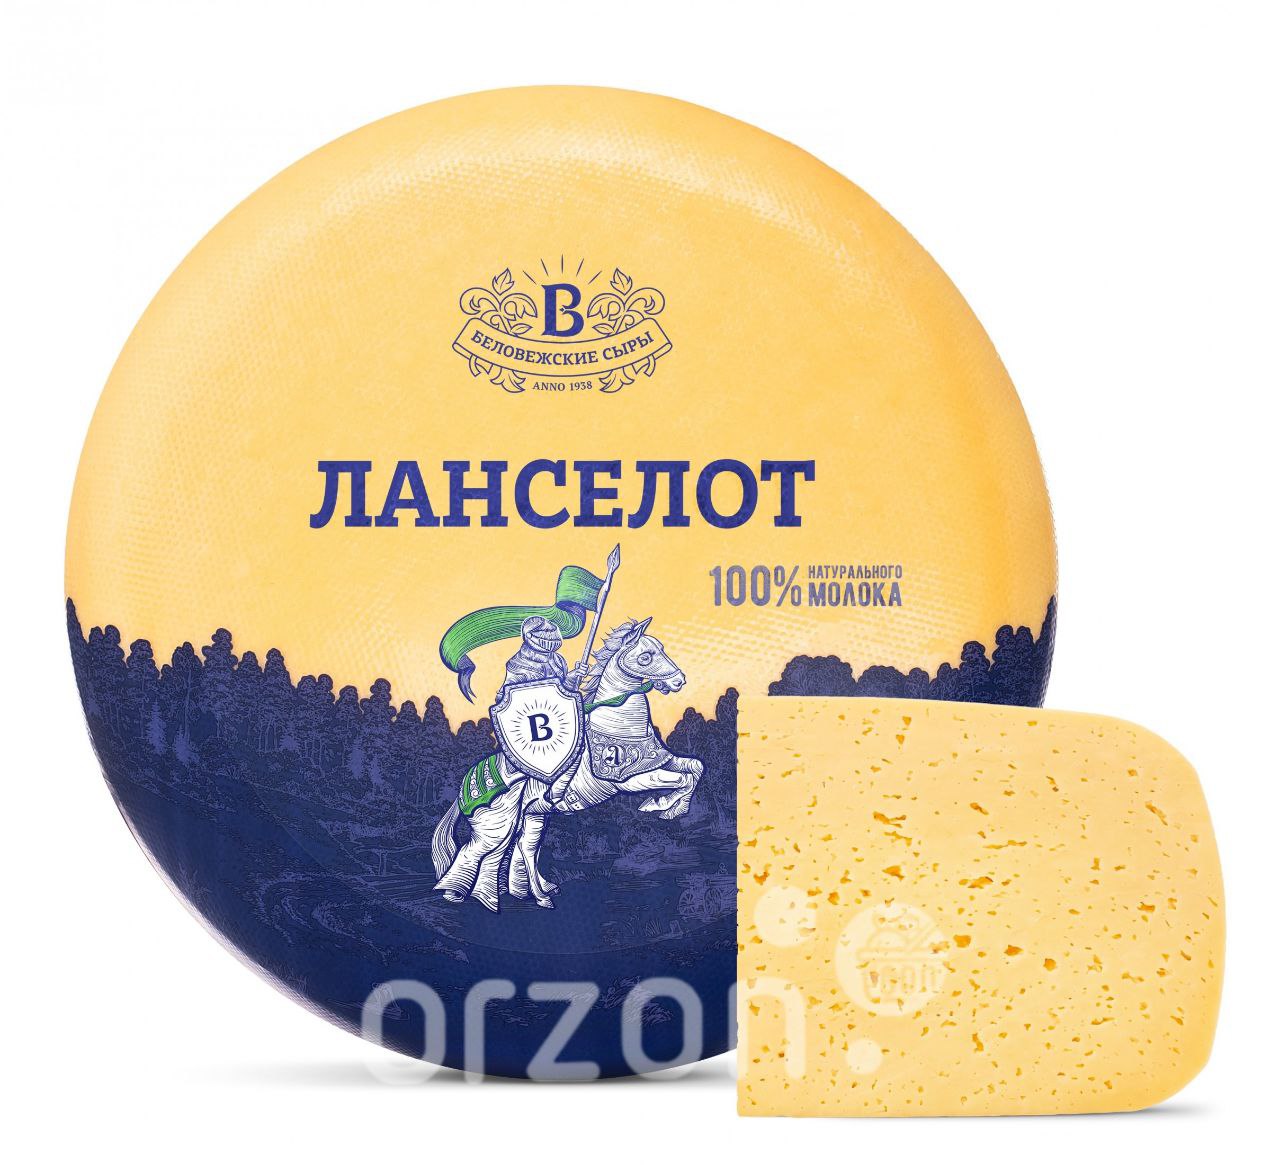 Сыр "Беловежские сыры" Ланселот с ароматом топлёного молока 45% ( головка ~6 кг ) цена за кг